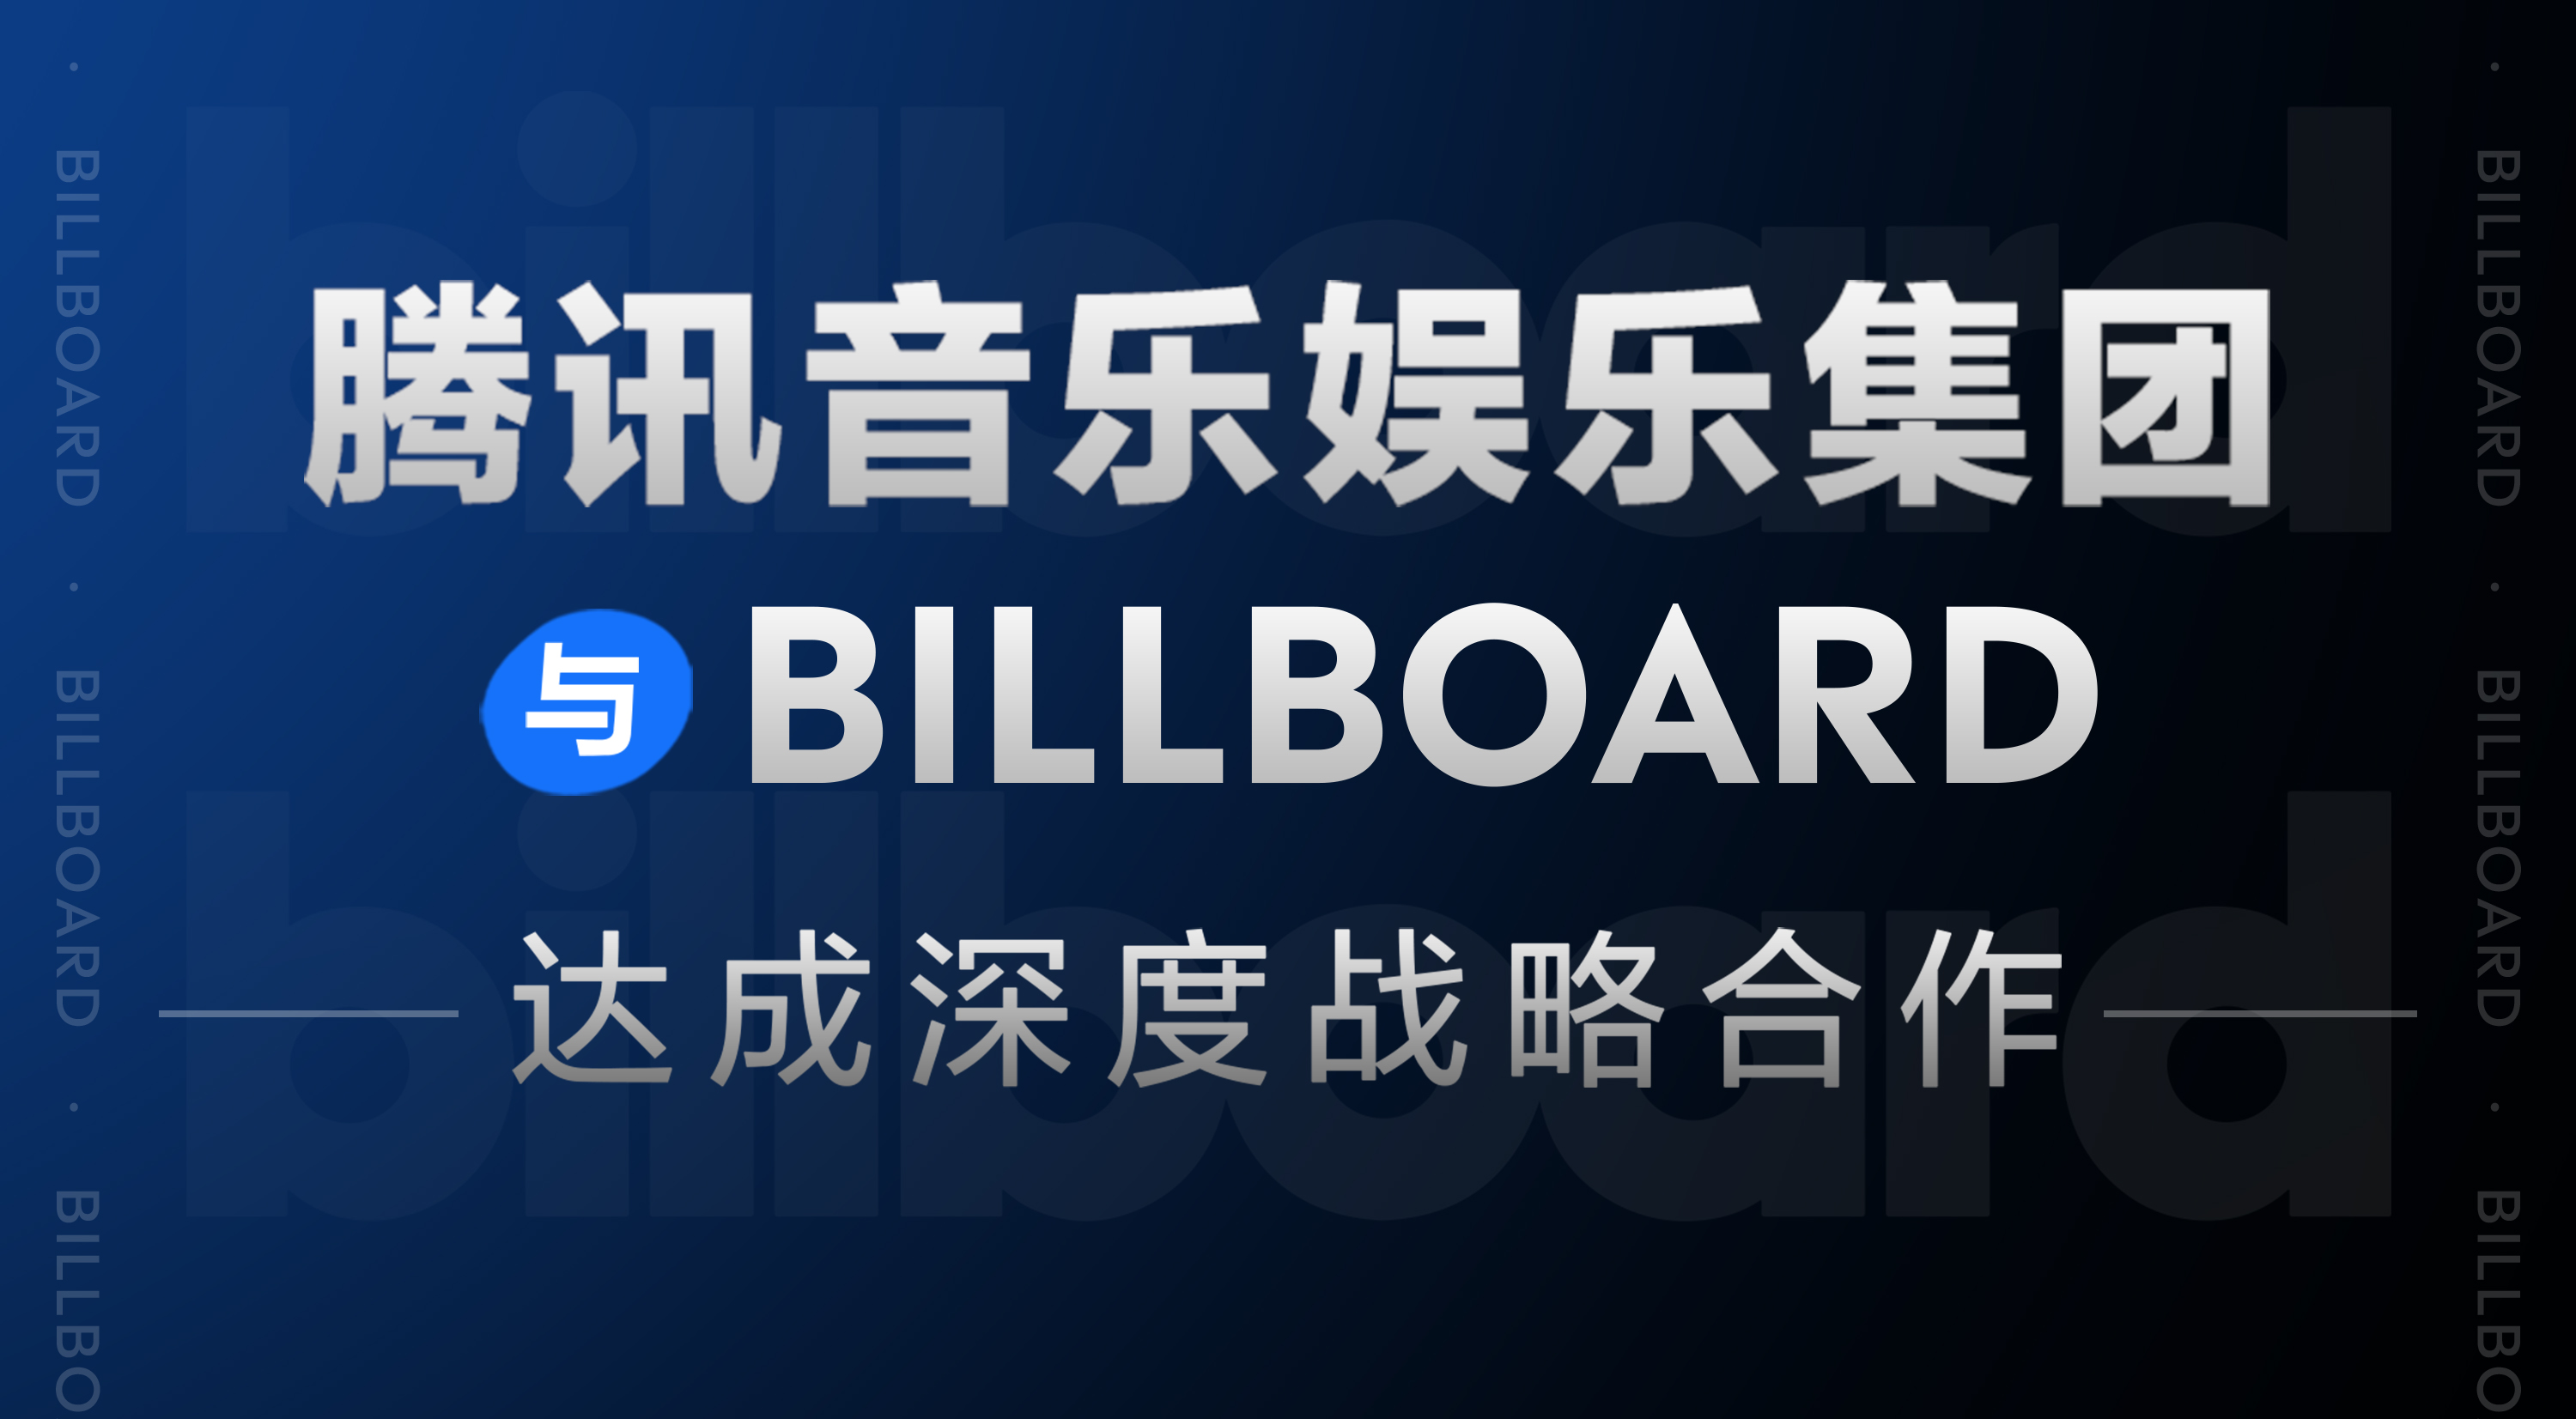 腾讯音乐娱乐集团与Billboard达成深度战略合作 国际标准助力中国音乐影响力持续提升